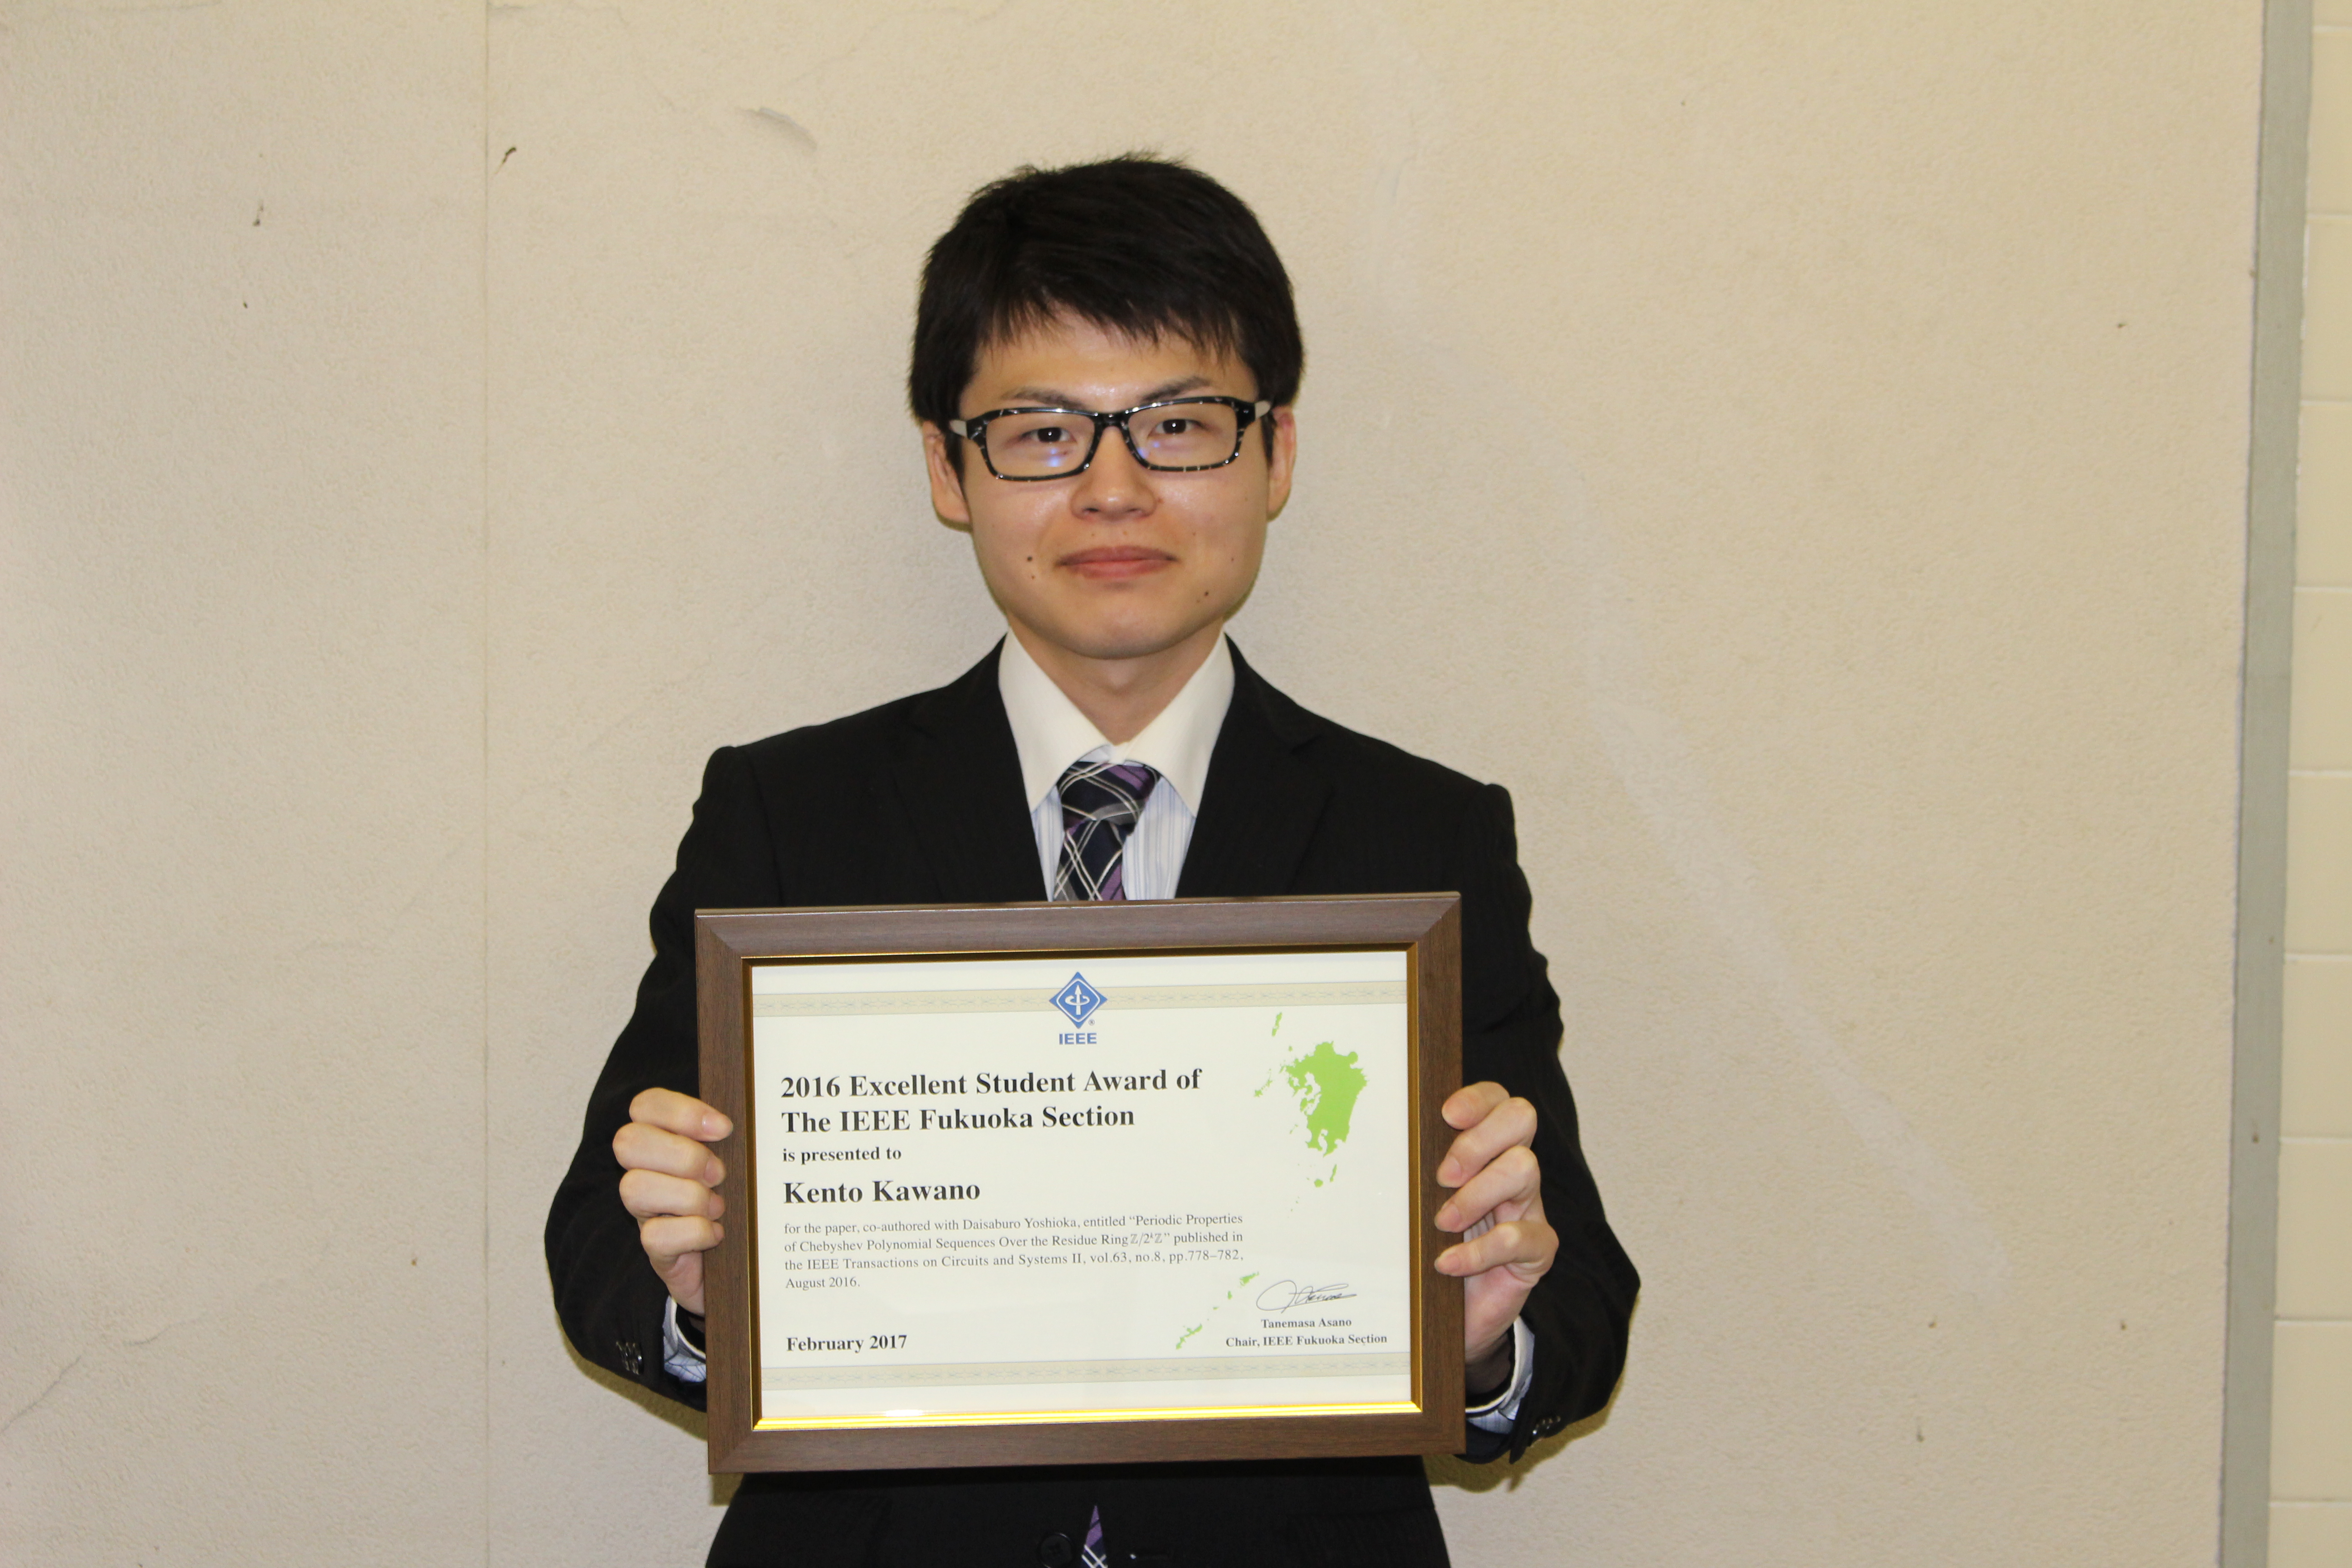 応用情報学専攻生がIEEE福岡支部学生研究奨励賞を受賞